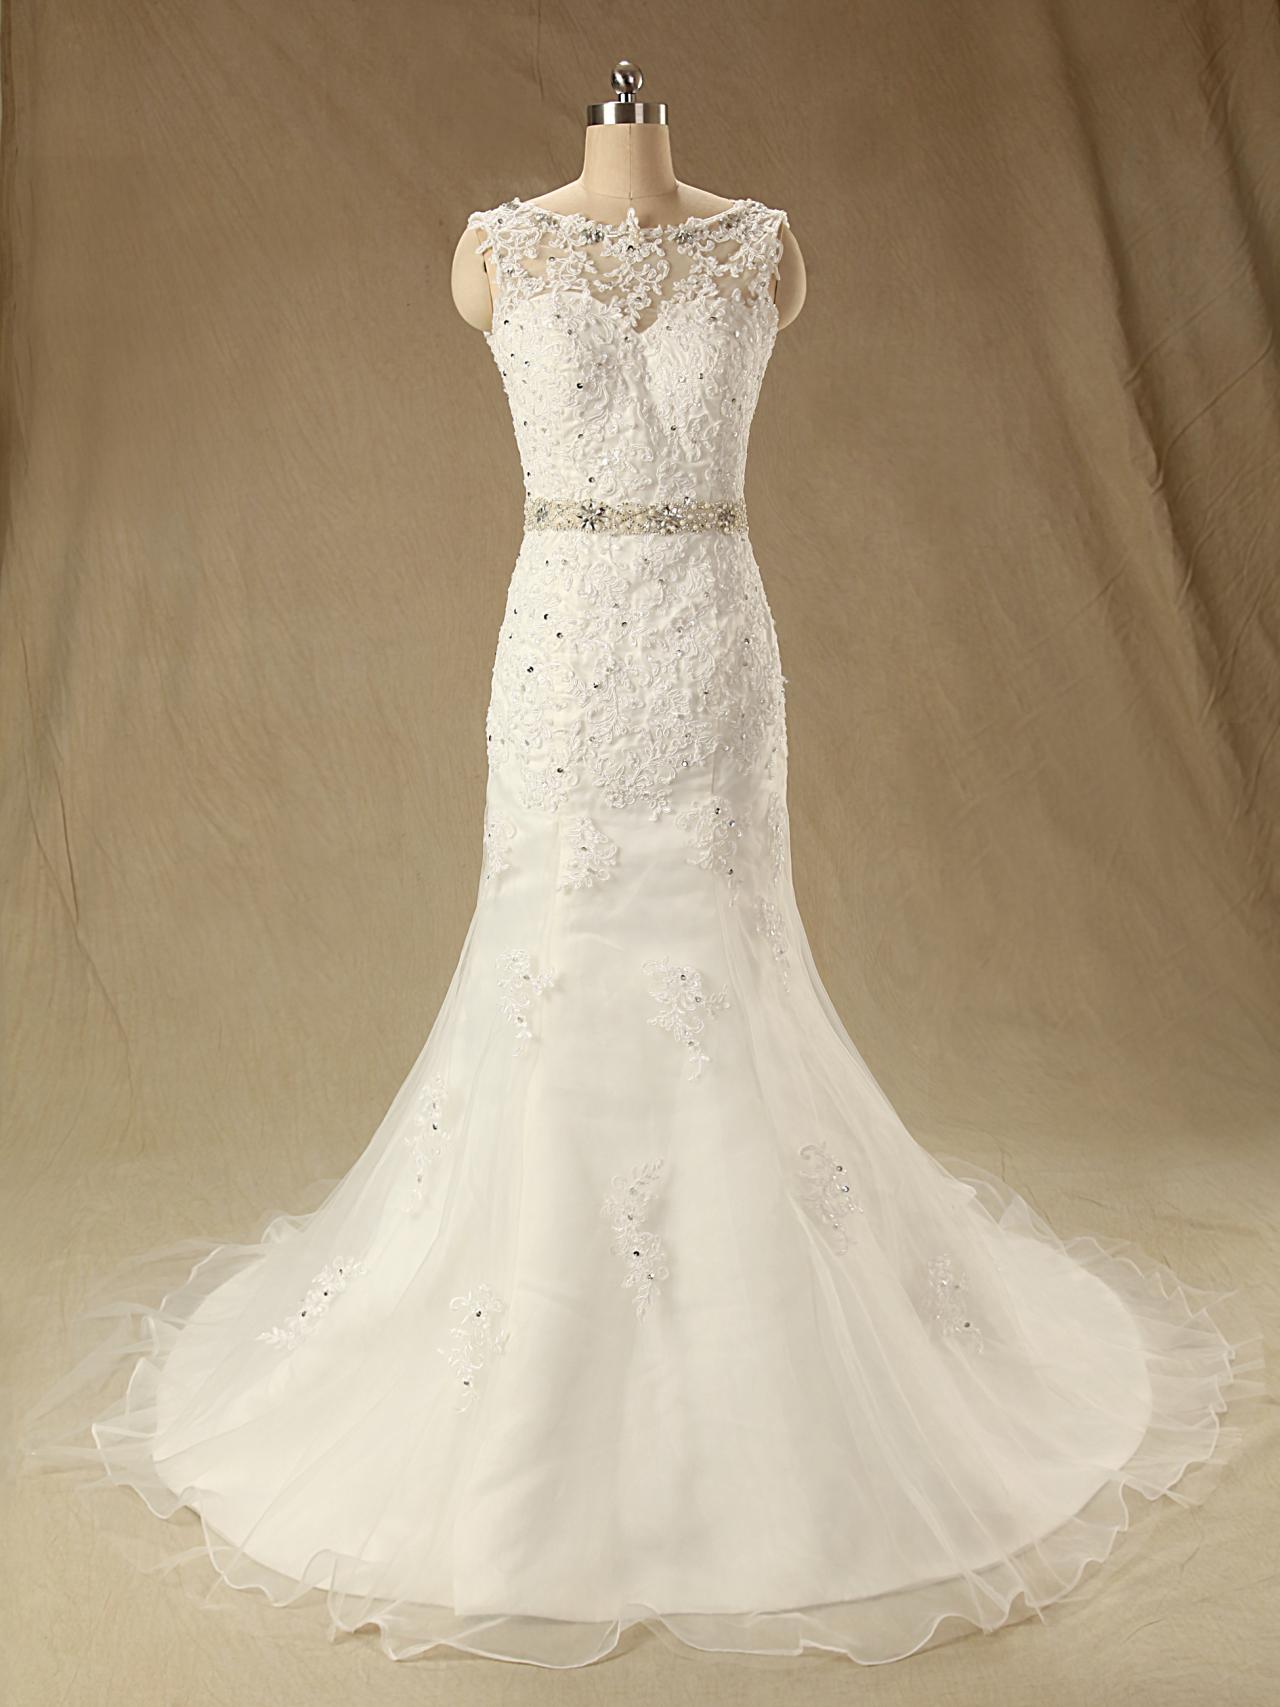 Xw153 Wedding Dress,lace Mermaid Wedding Dress,sexy Wedding Dress With Beading Sash,long Lace Mermaid Bridal Dress,lace Wedding Dress